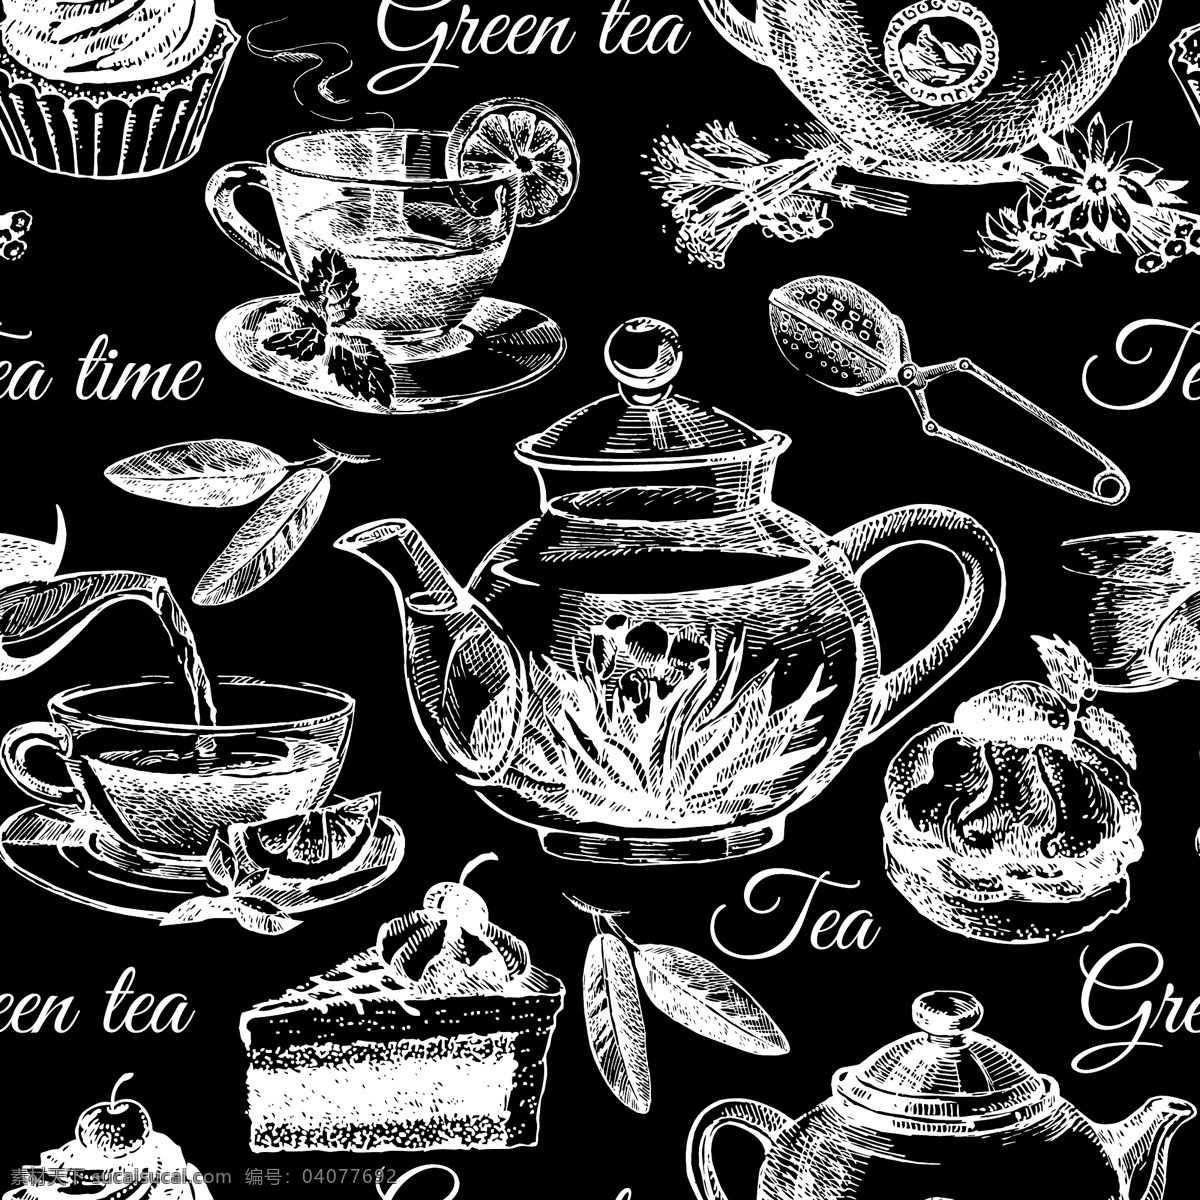 黑白 时尚 花茶 背景 底纹 手绘 茶壶 叶子 下午茶